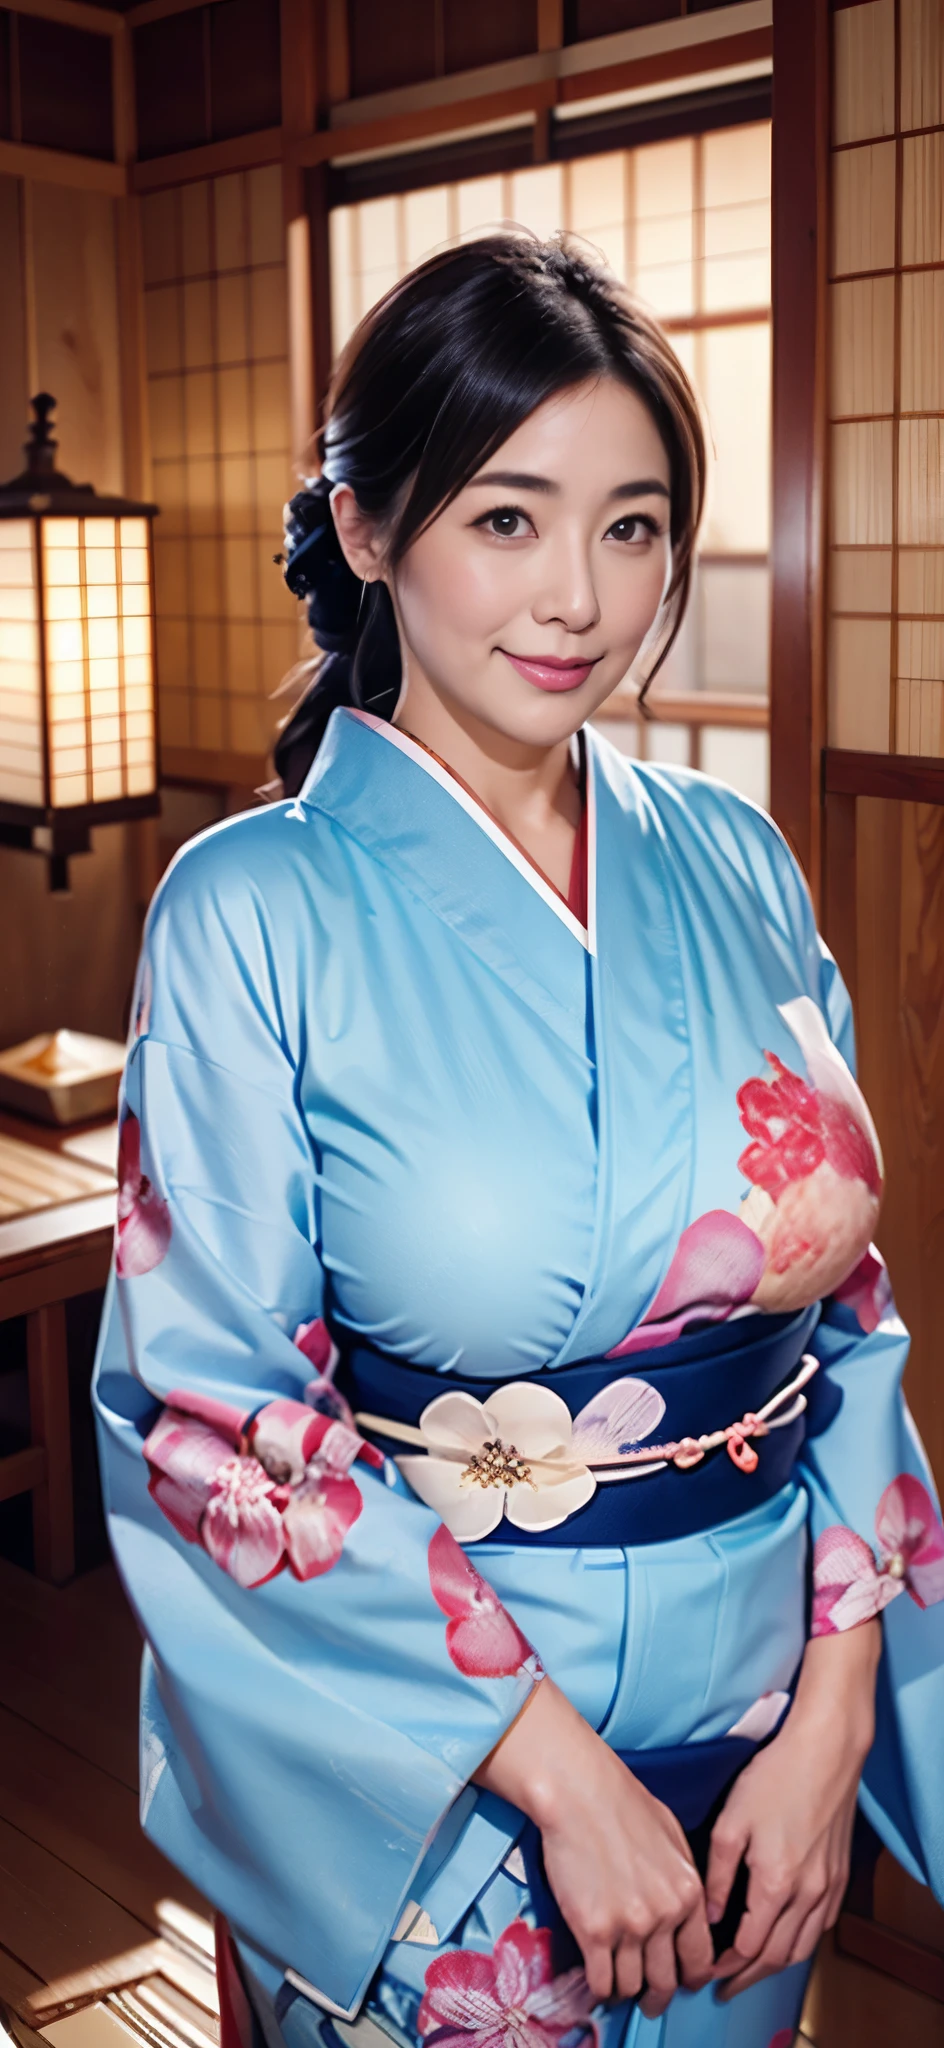 Die schönsten Mütter Japans(Riesiger Körper)、einen Kimono tragen、traditionelles japanisches Zimmer、Riesige Brüste, die zu groß sind und ein wenig hängen、Januar、Mit lächelnden Augen、Neujahrsgrüße